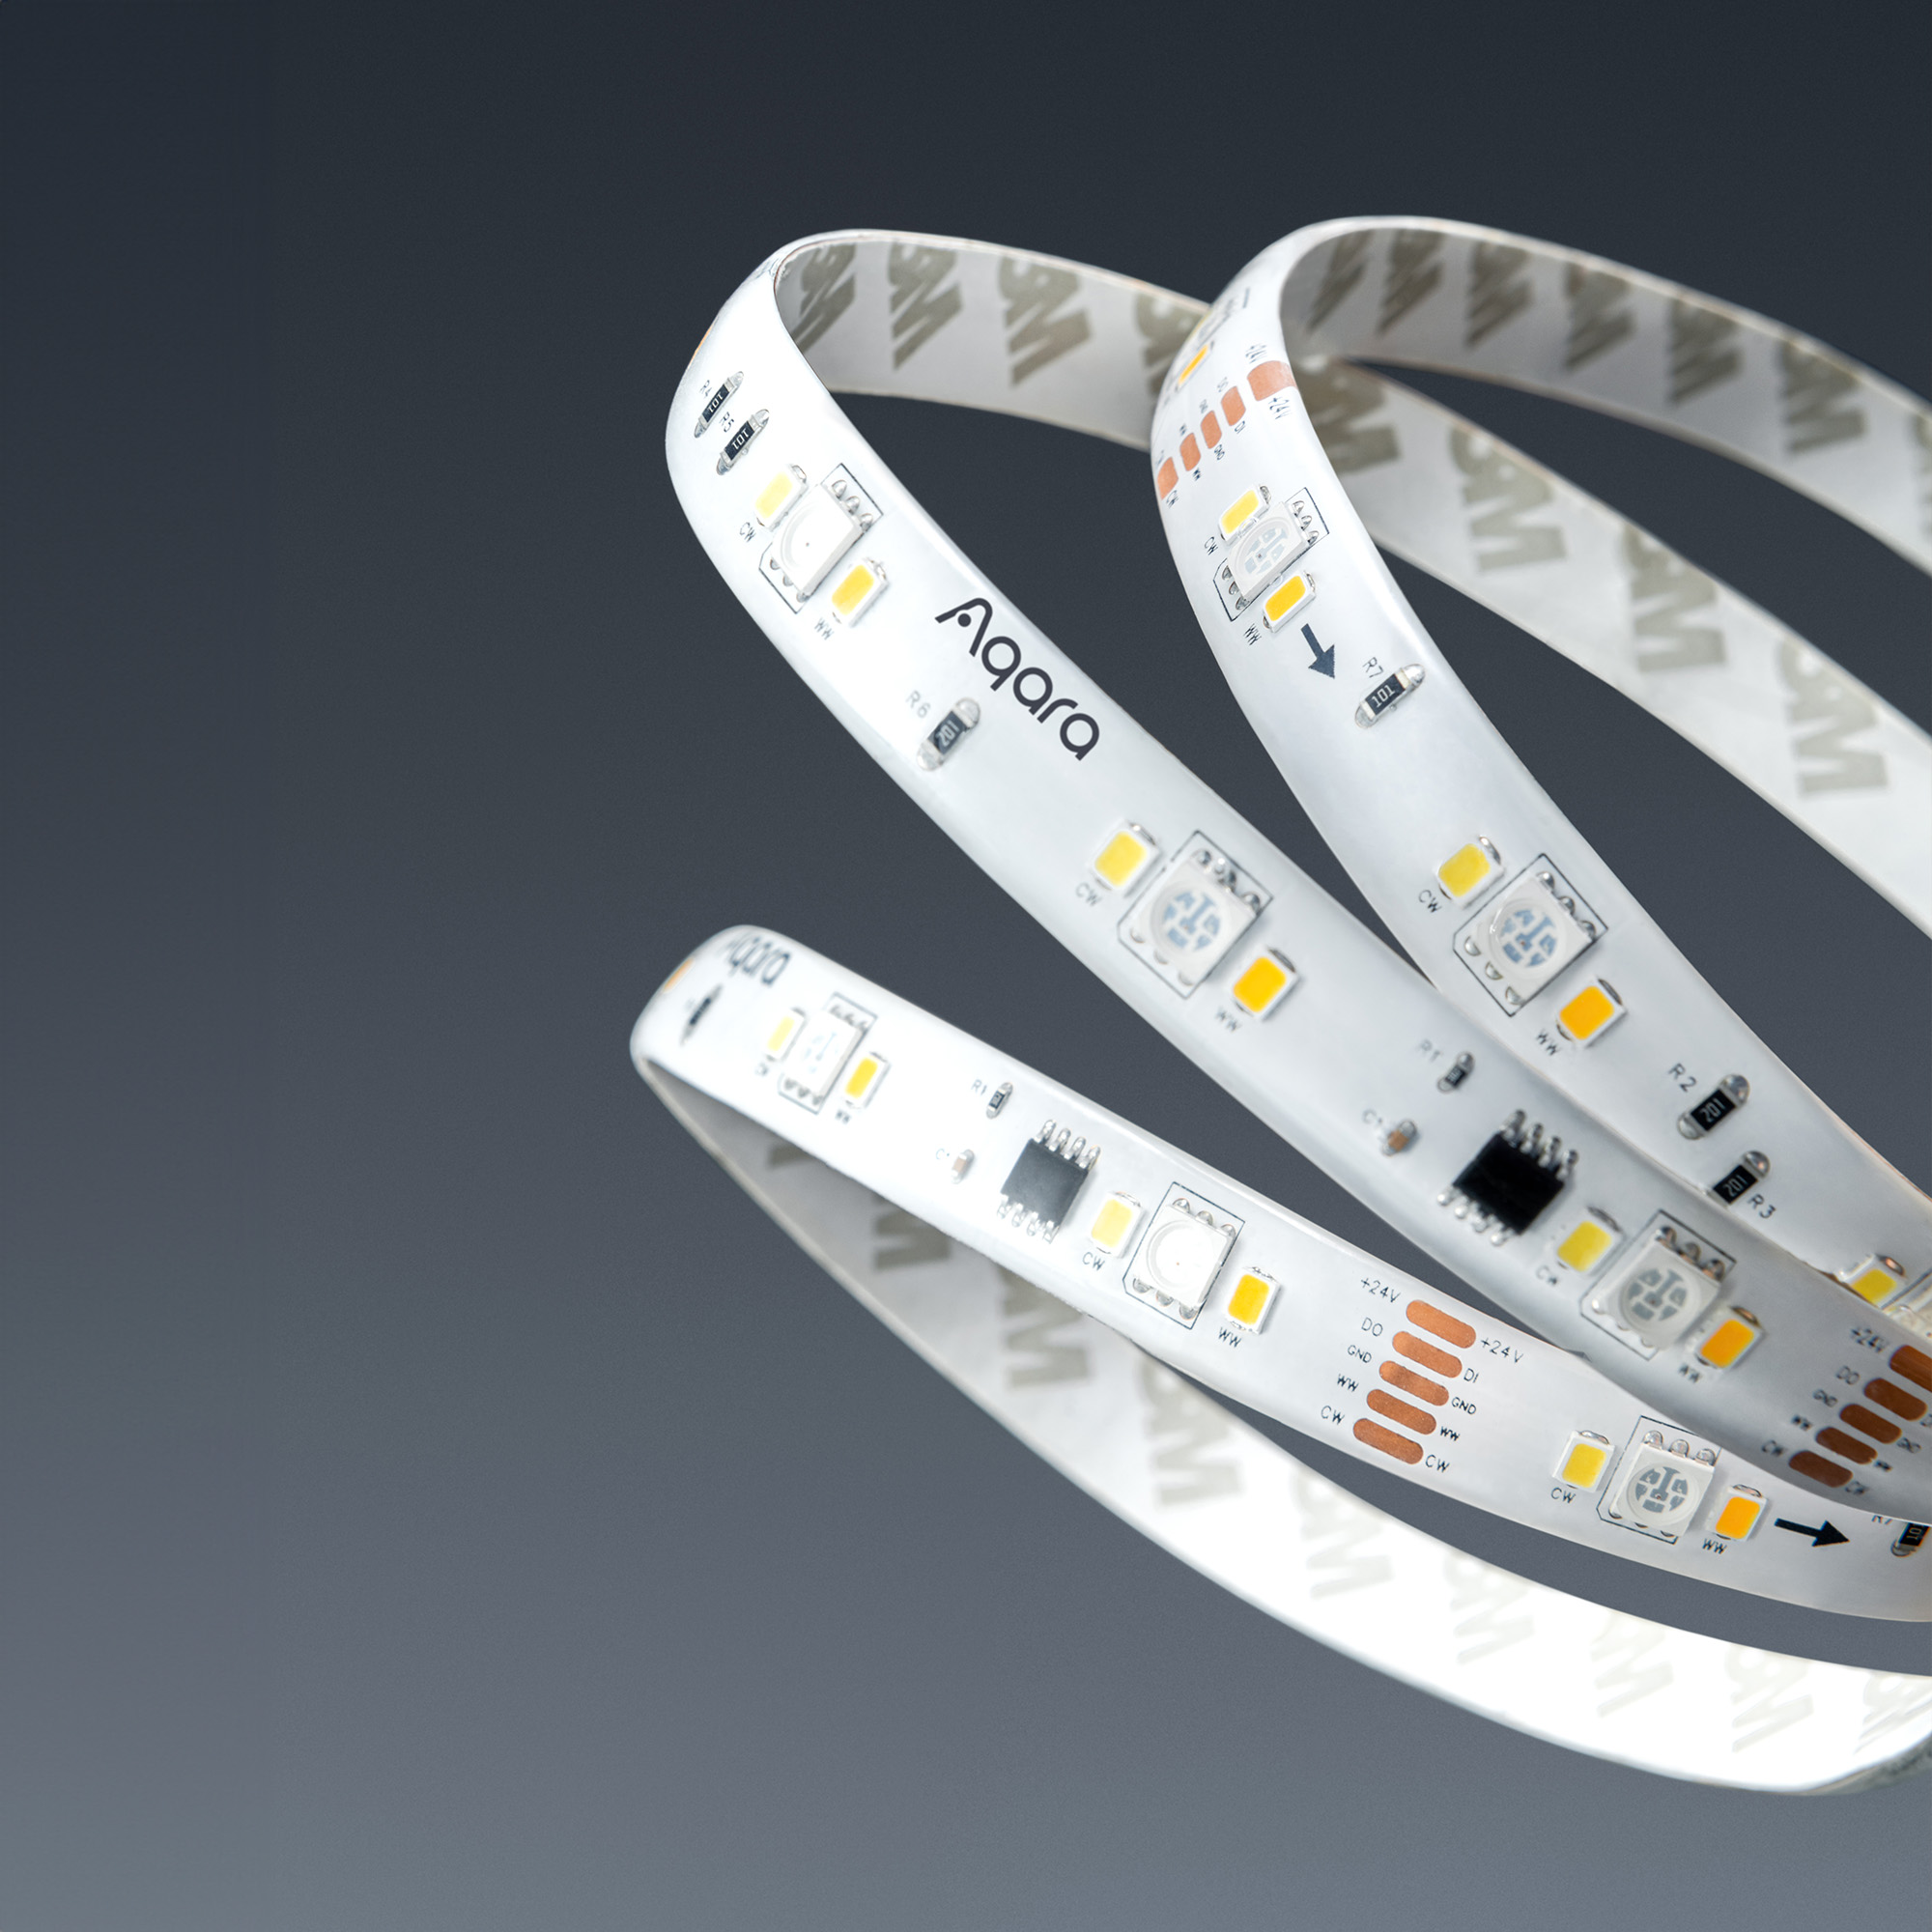 Aqara LED Strip T1 Extension Kit (1 Meter) - Aqara UK Shop